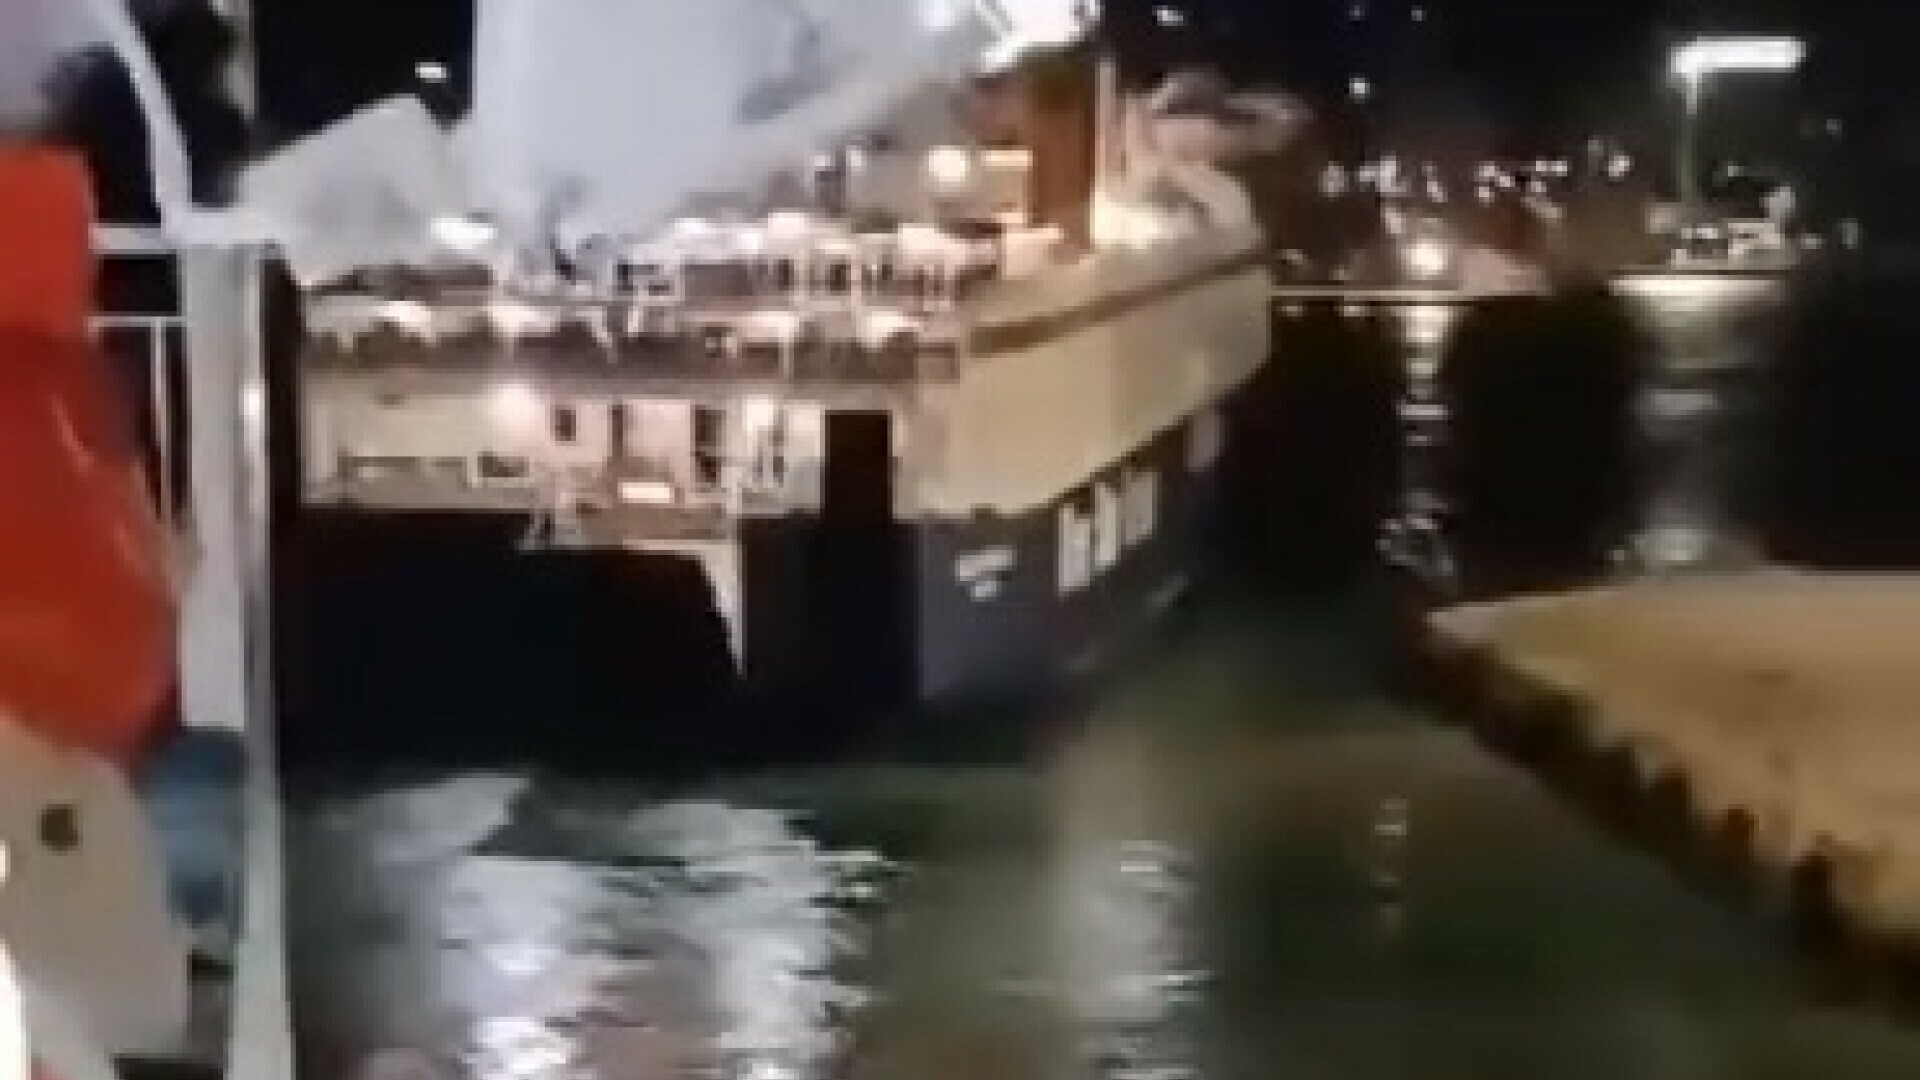 VIDEO Muškarac bačen s trajekta nije imao šanse preživjeti! Radnici opisali stravične detalje tragedije: “Ljudi su vikali, ali trajekt nije stao”